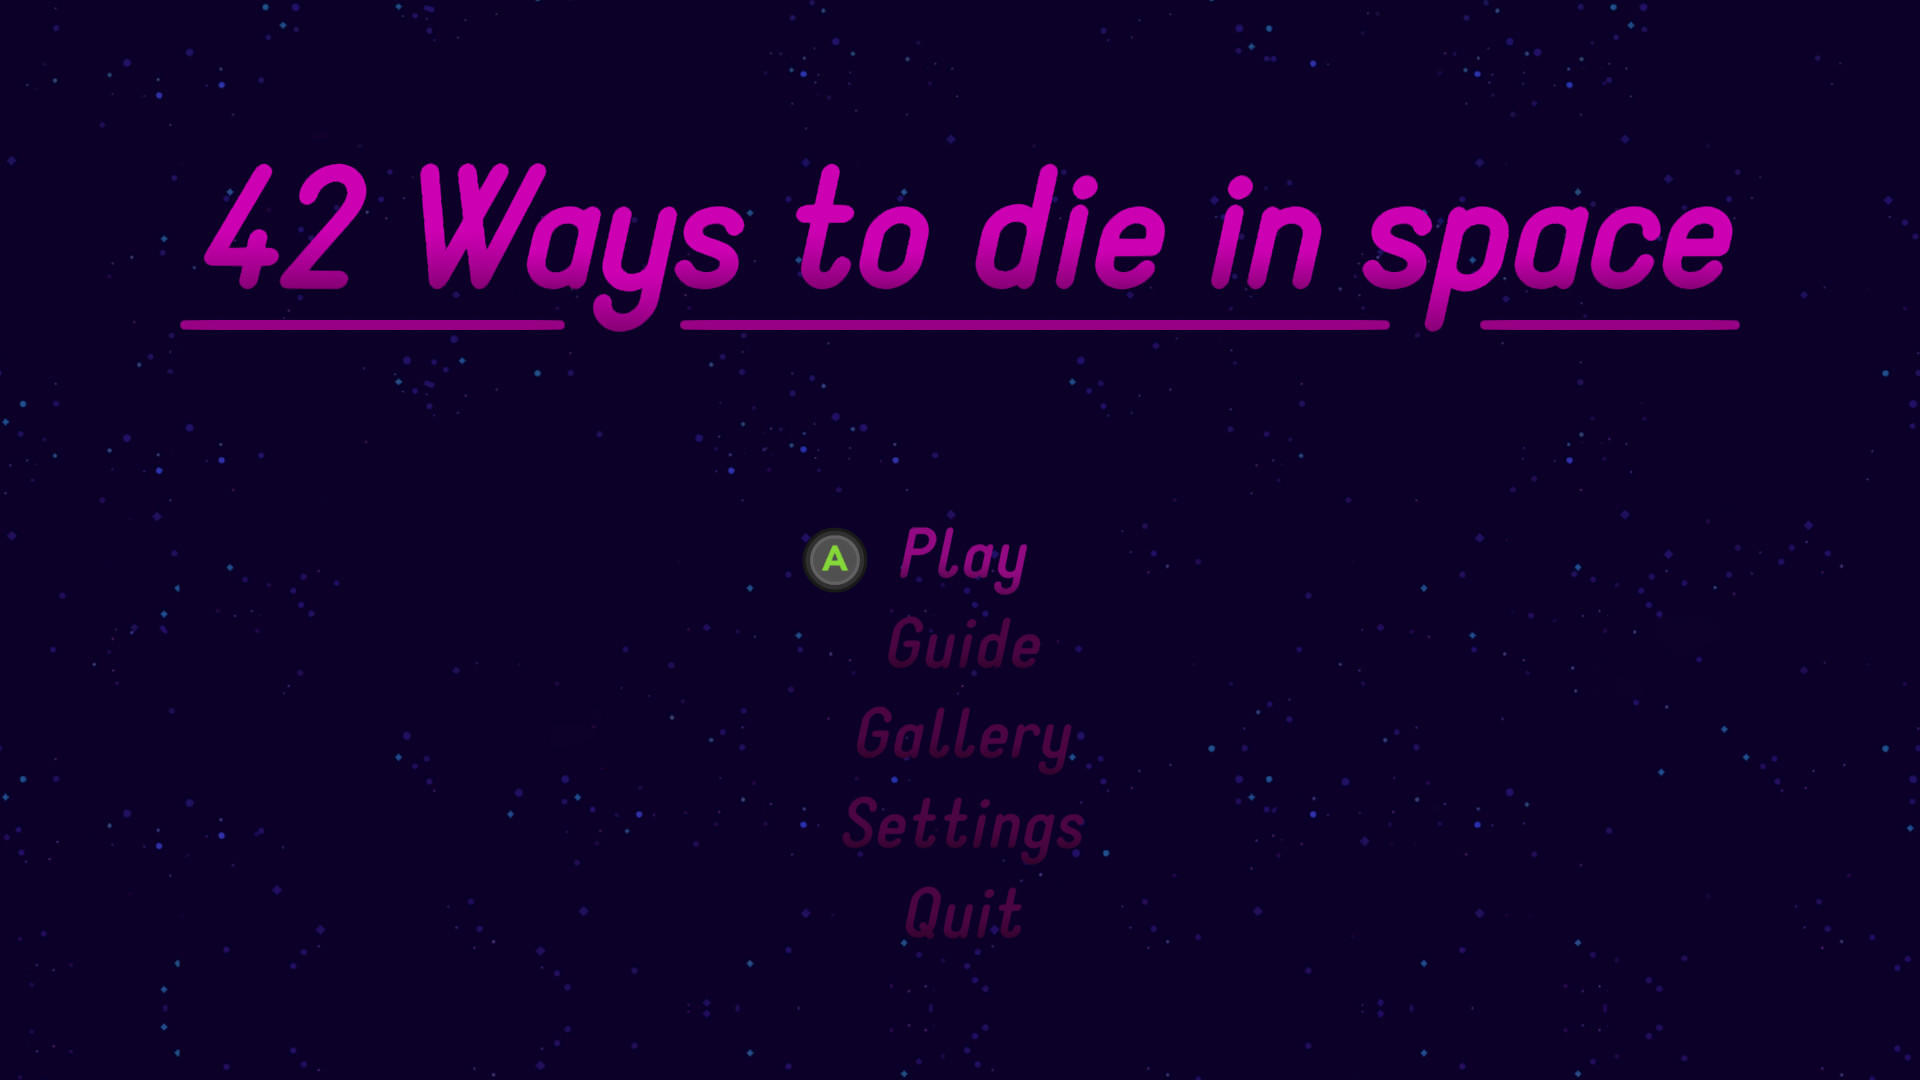 Screenshot 1 of 42 Ways To Die In Space 